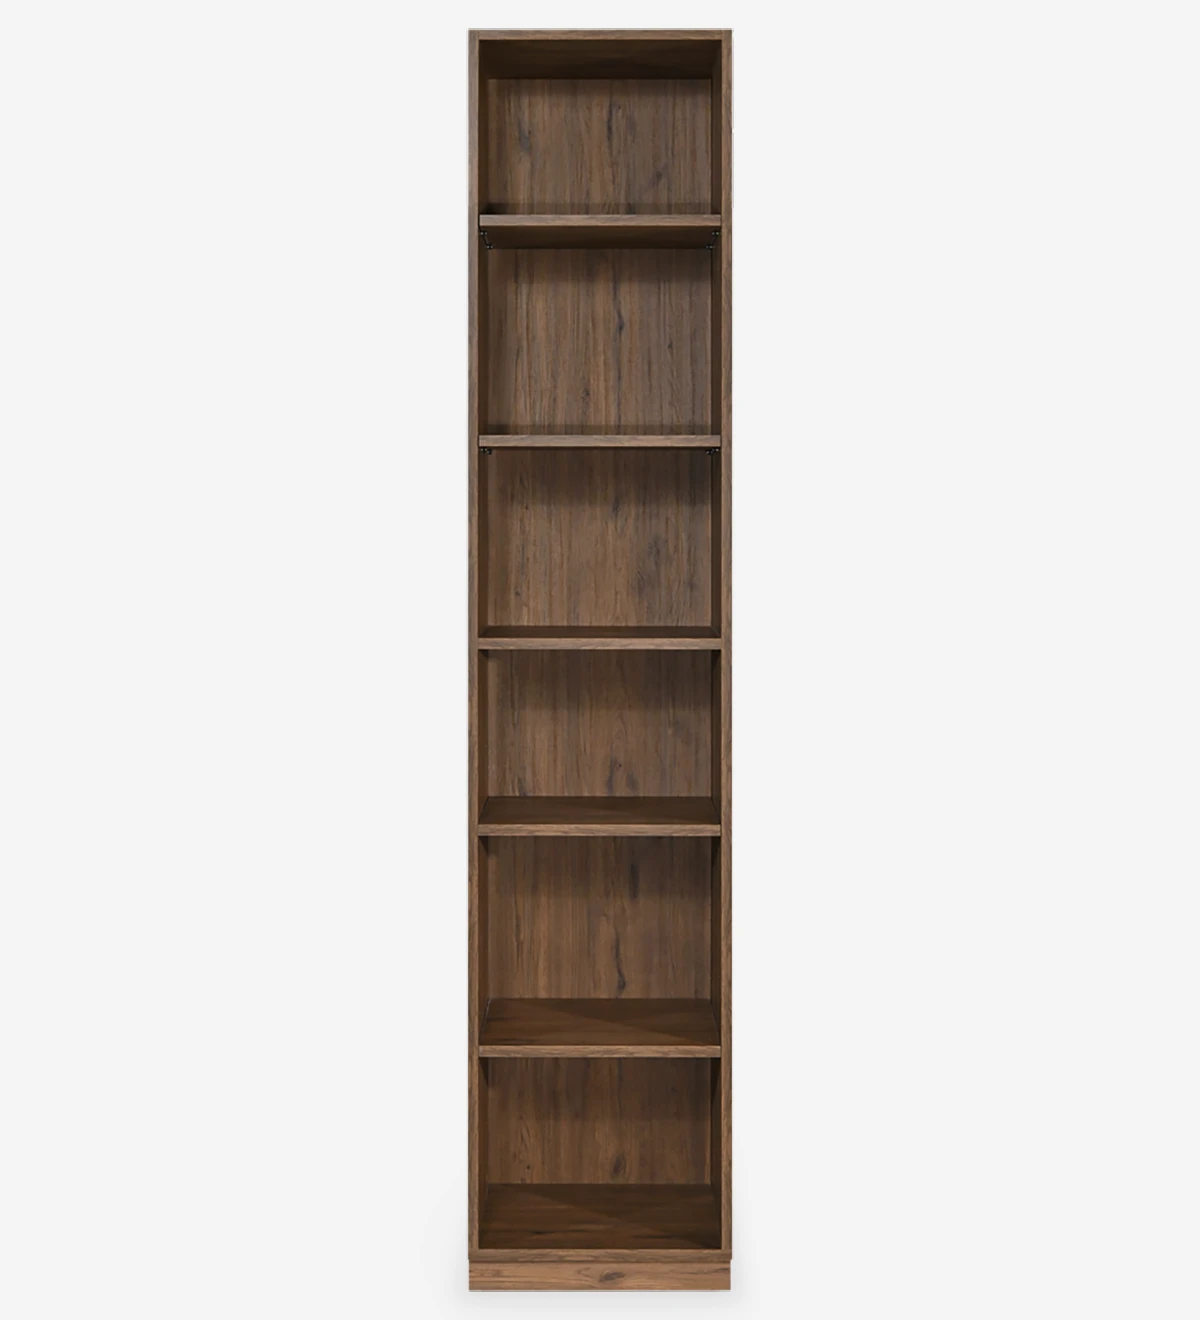 Librería alta de roble envejecido, con estantes extraíbles.